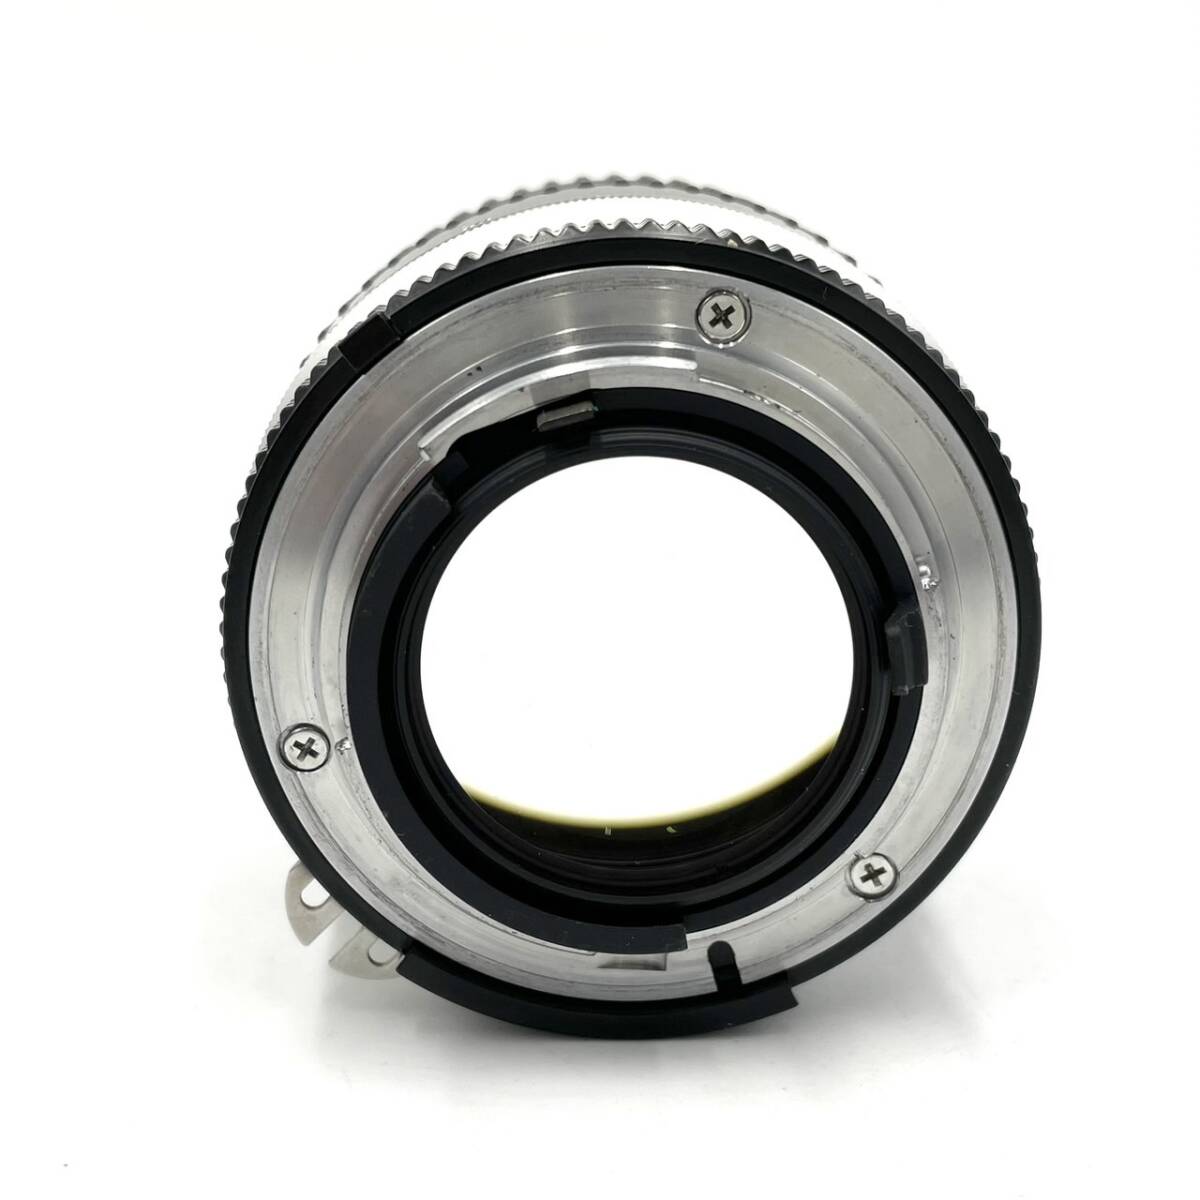 Nikon ニコン Ai-s nikkor 35mm f1.4 元箱付き シリアル一致_画像6